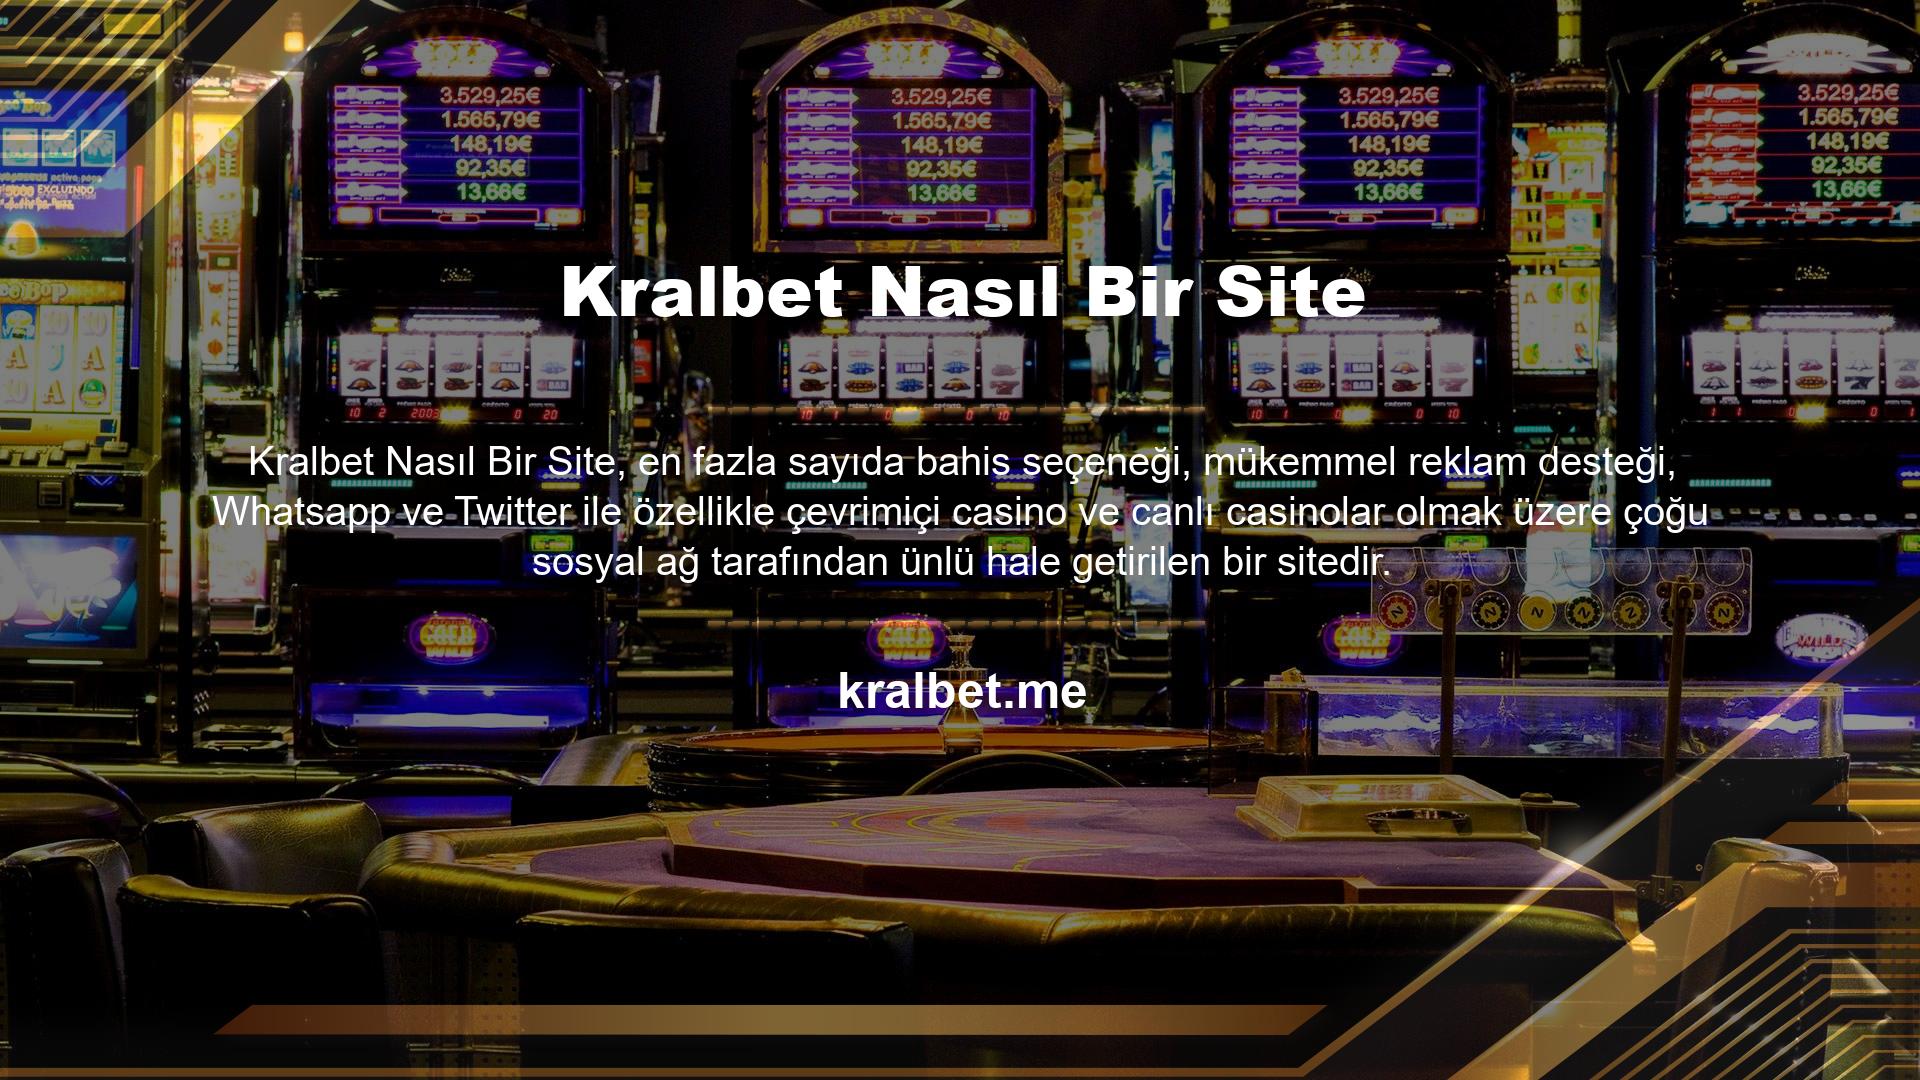 Kralbet web sitesinin 'Çevrimiçi Casino Araştırma ve Oyun Analizi' platformu olarak 'eksiksiz' ve 'doğru' verilere dayalı bilgiler sunmaya çalışıyoruz